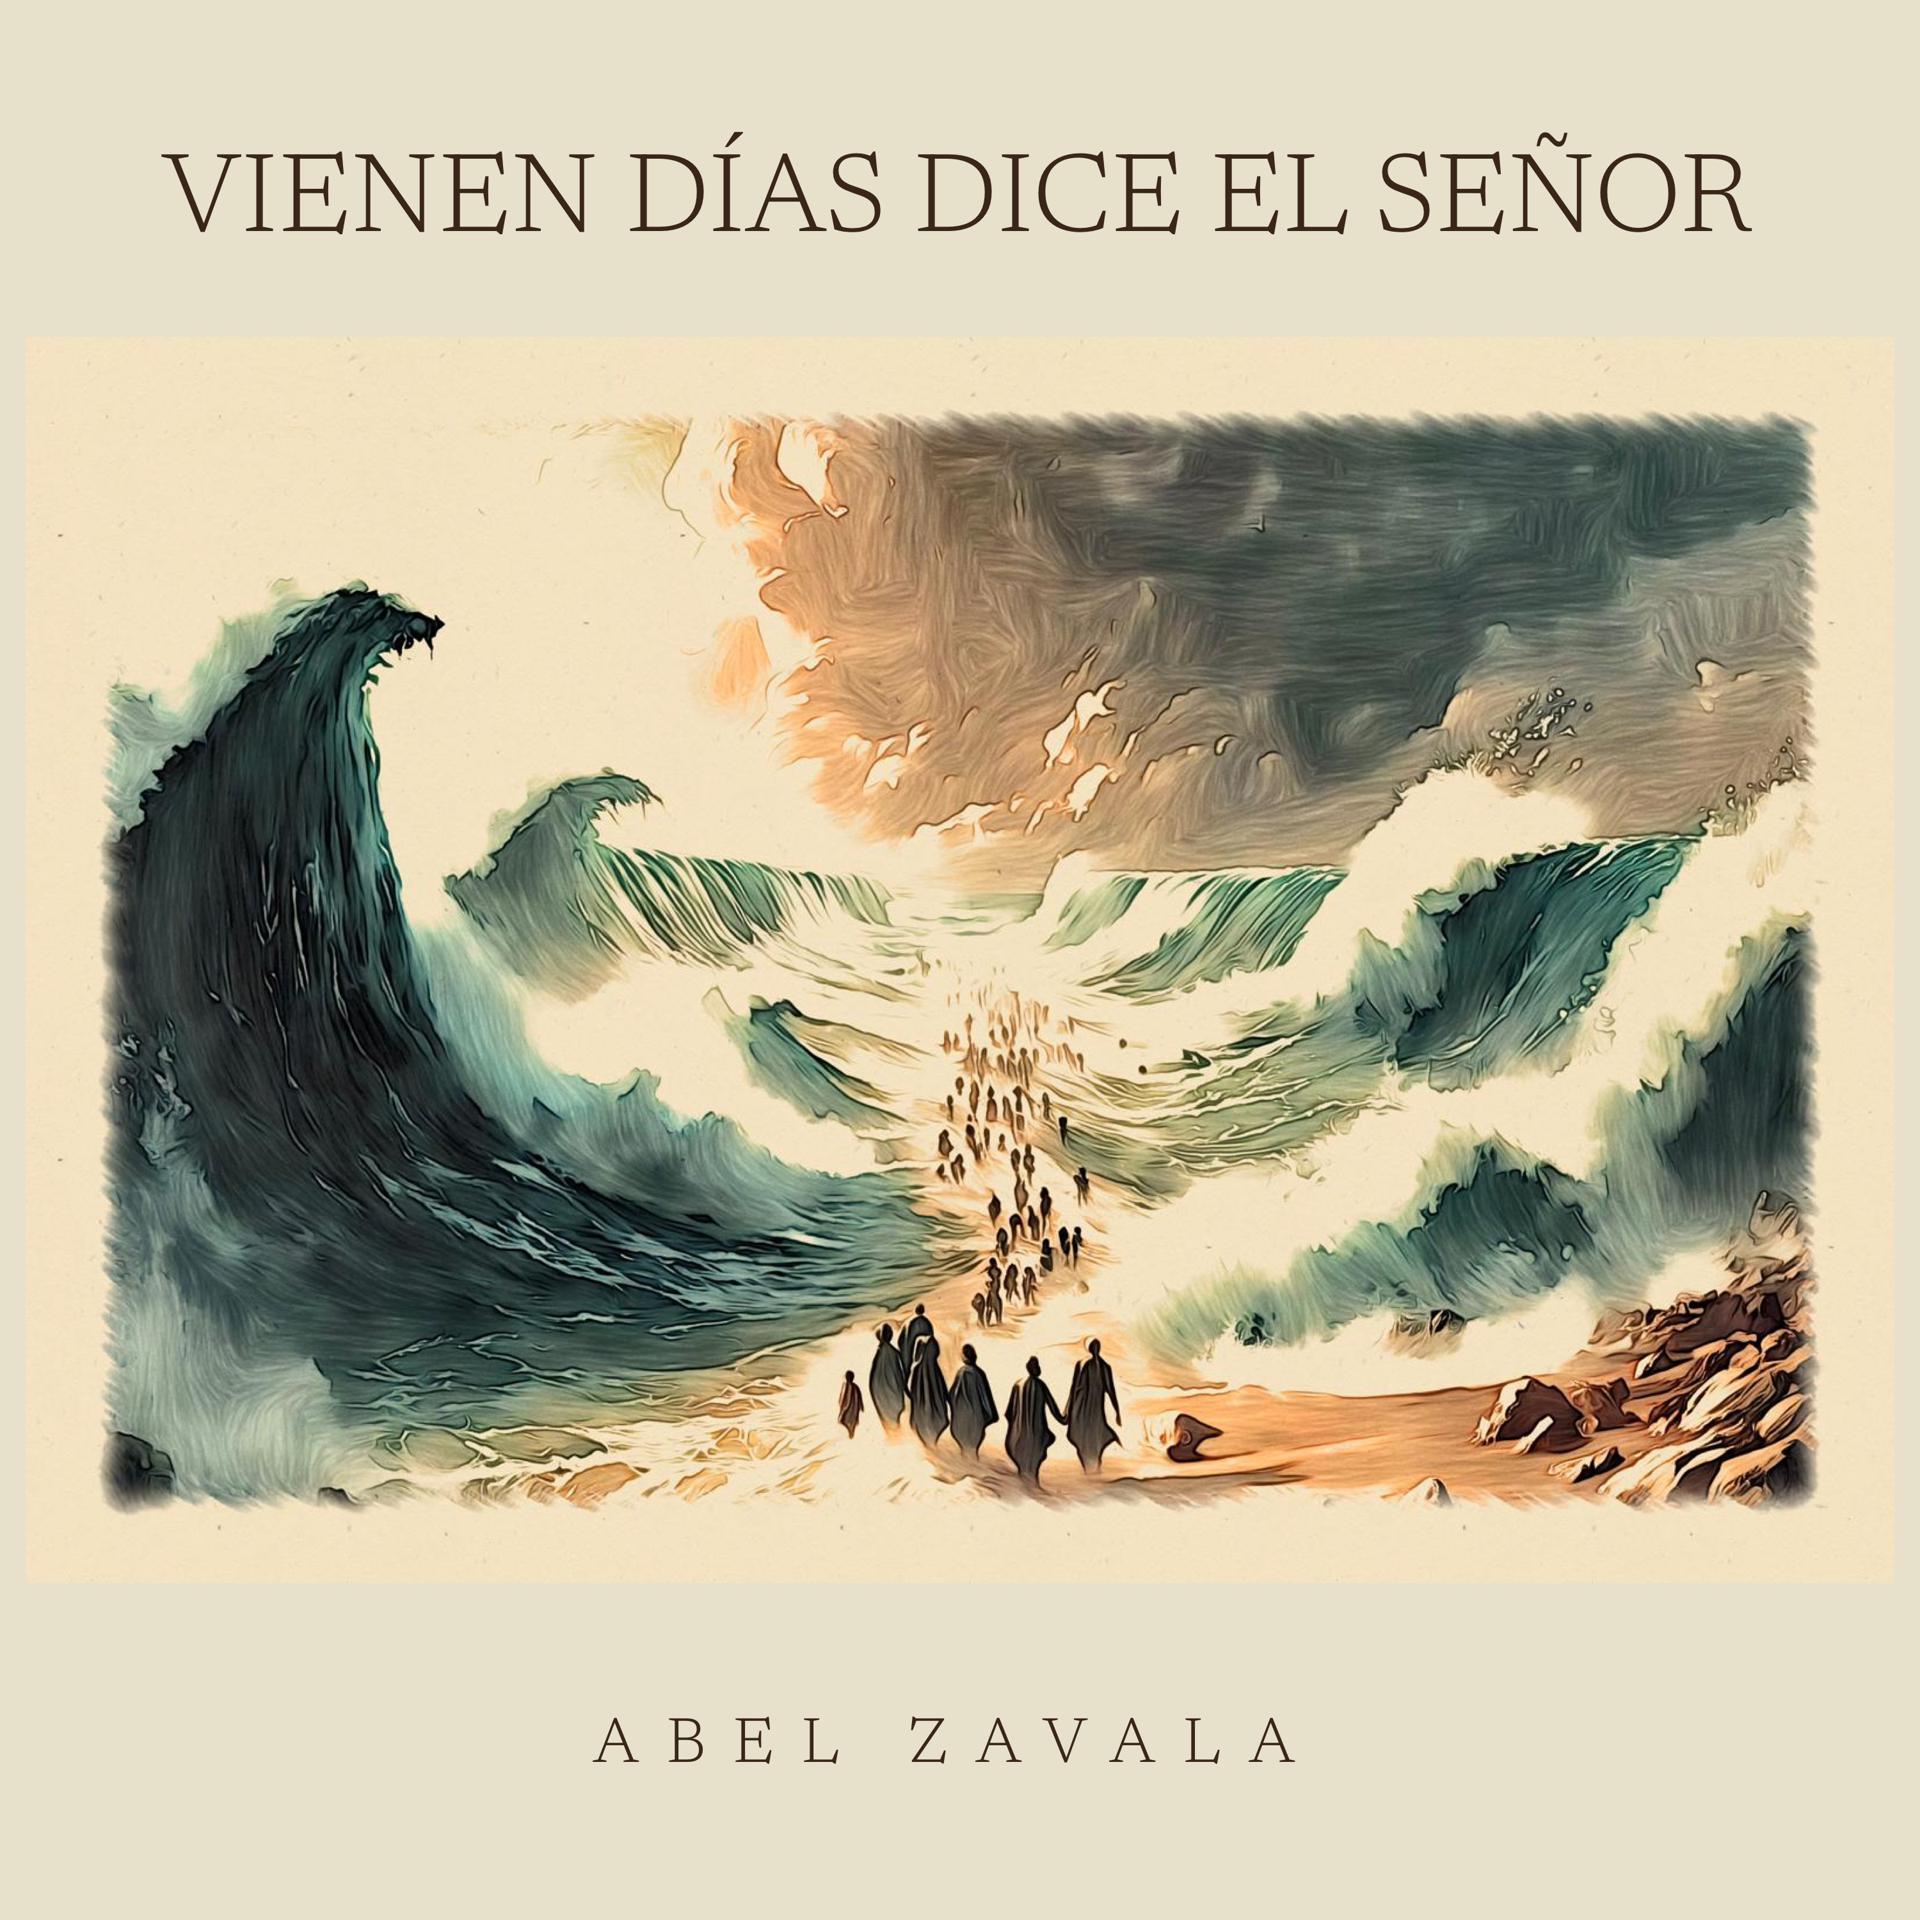 Постер альбома “Vienen Dias" dice El Señor